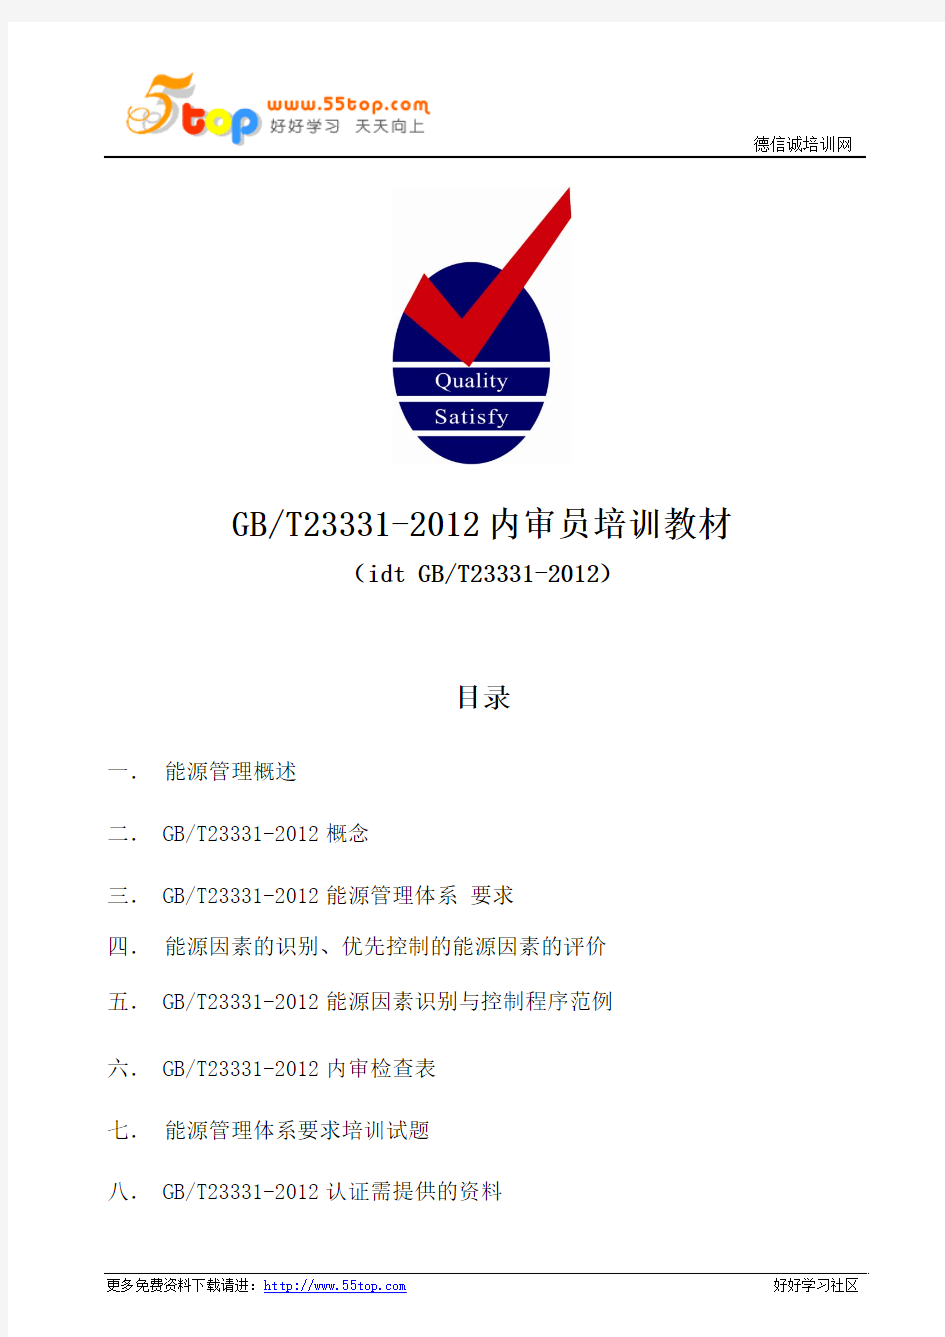 GBT23331-2012内审员培训教材